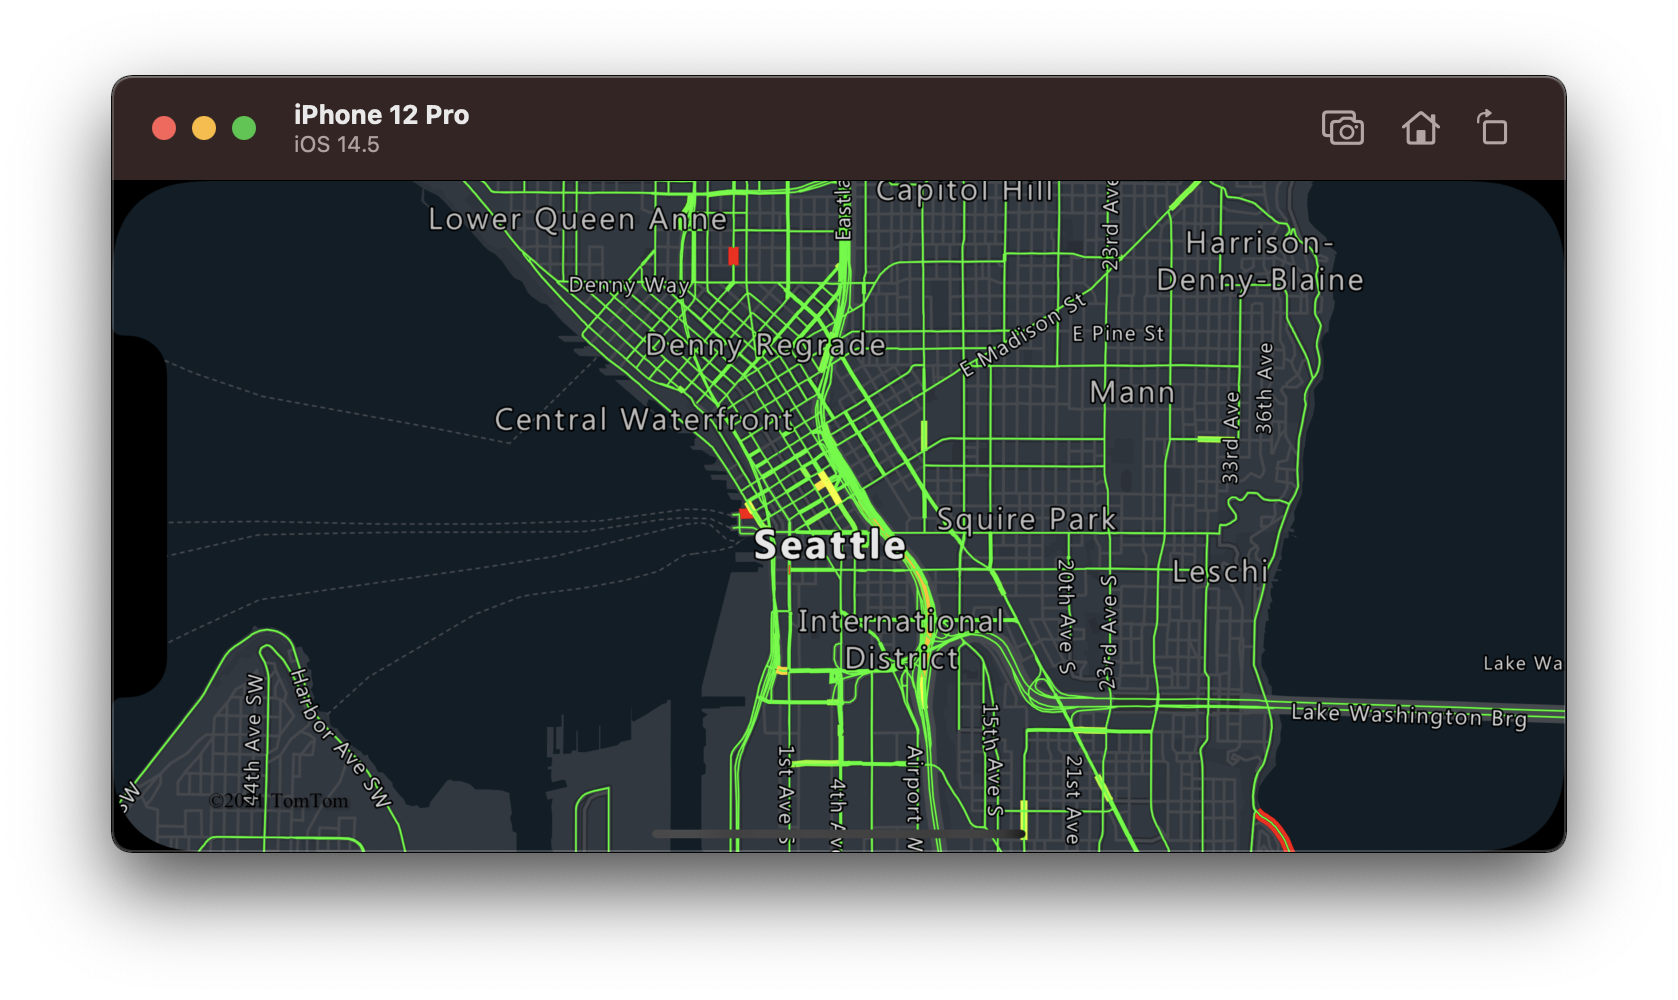 لقطة شاشة لخريطة بخطوط طريق مرمزة بالألوان تعرض مستويات تدفق حركة المرور.